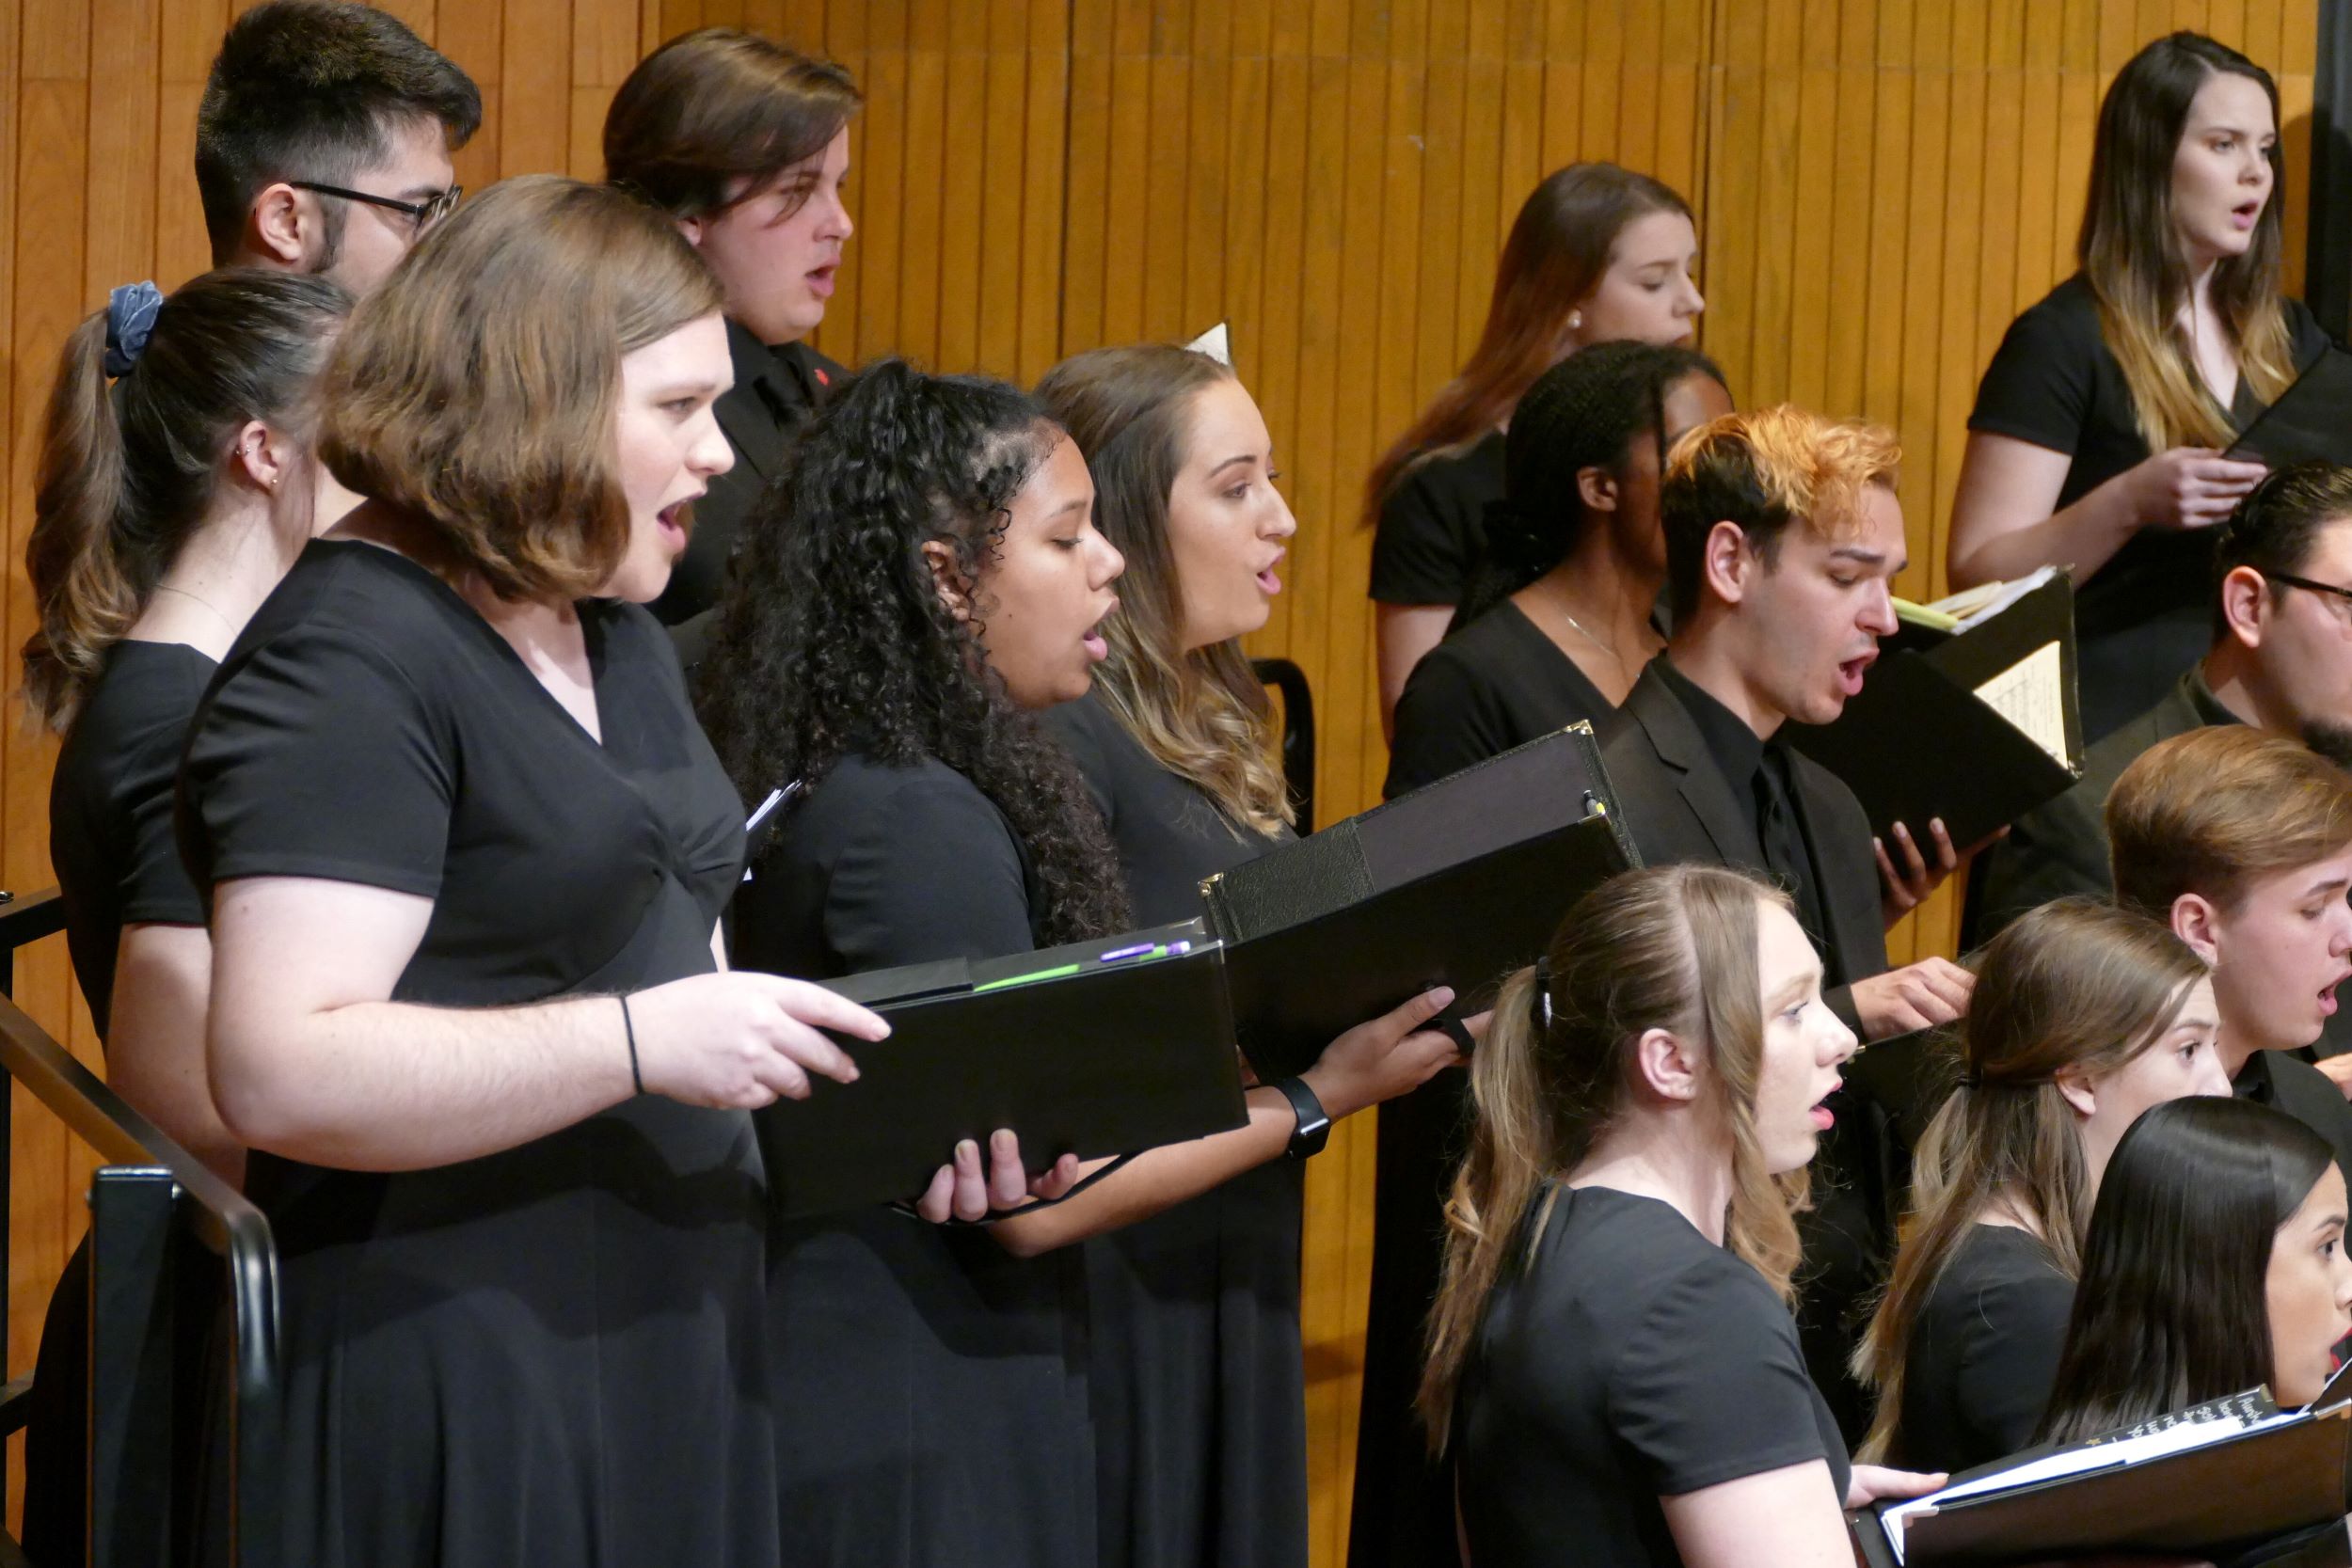 Masterworks chorus singers dressed in black.